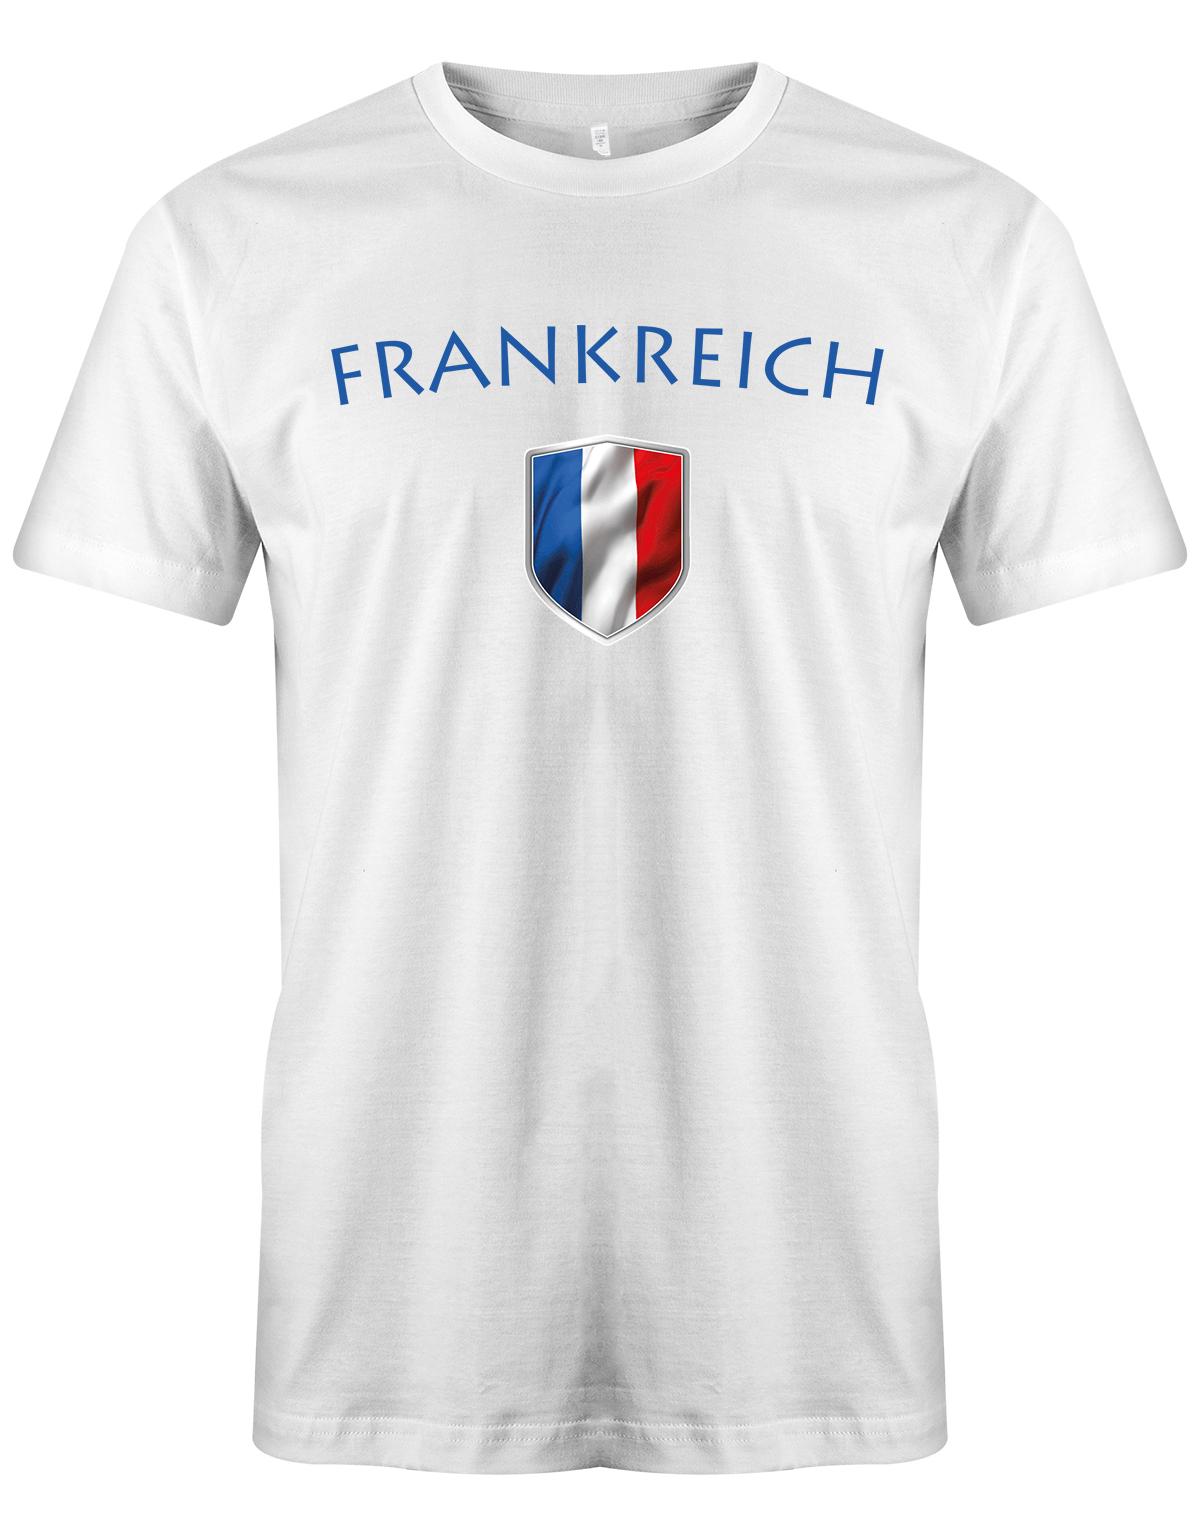 Frankreich-Herren-Shirt-Weiss